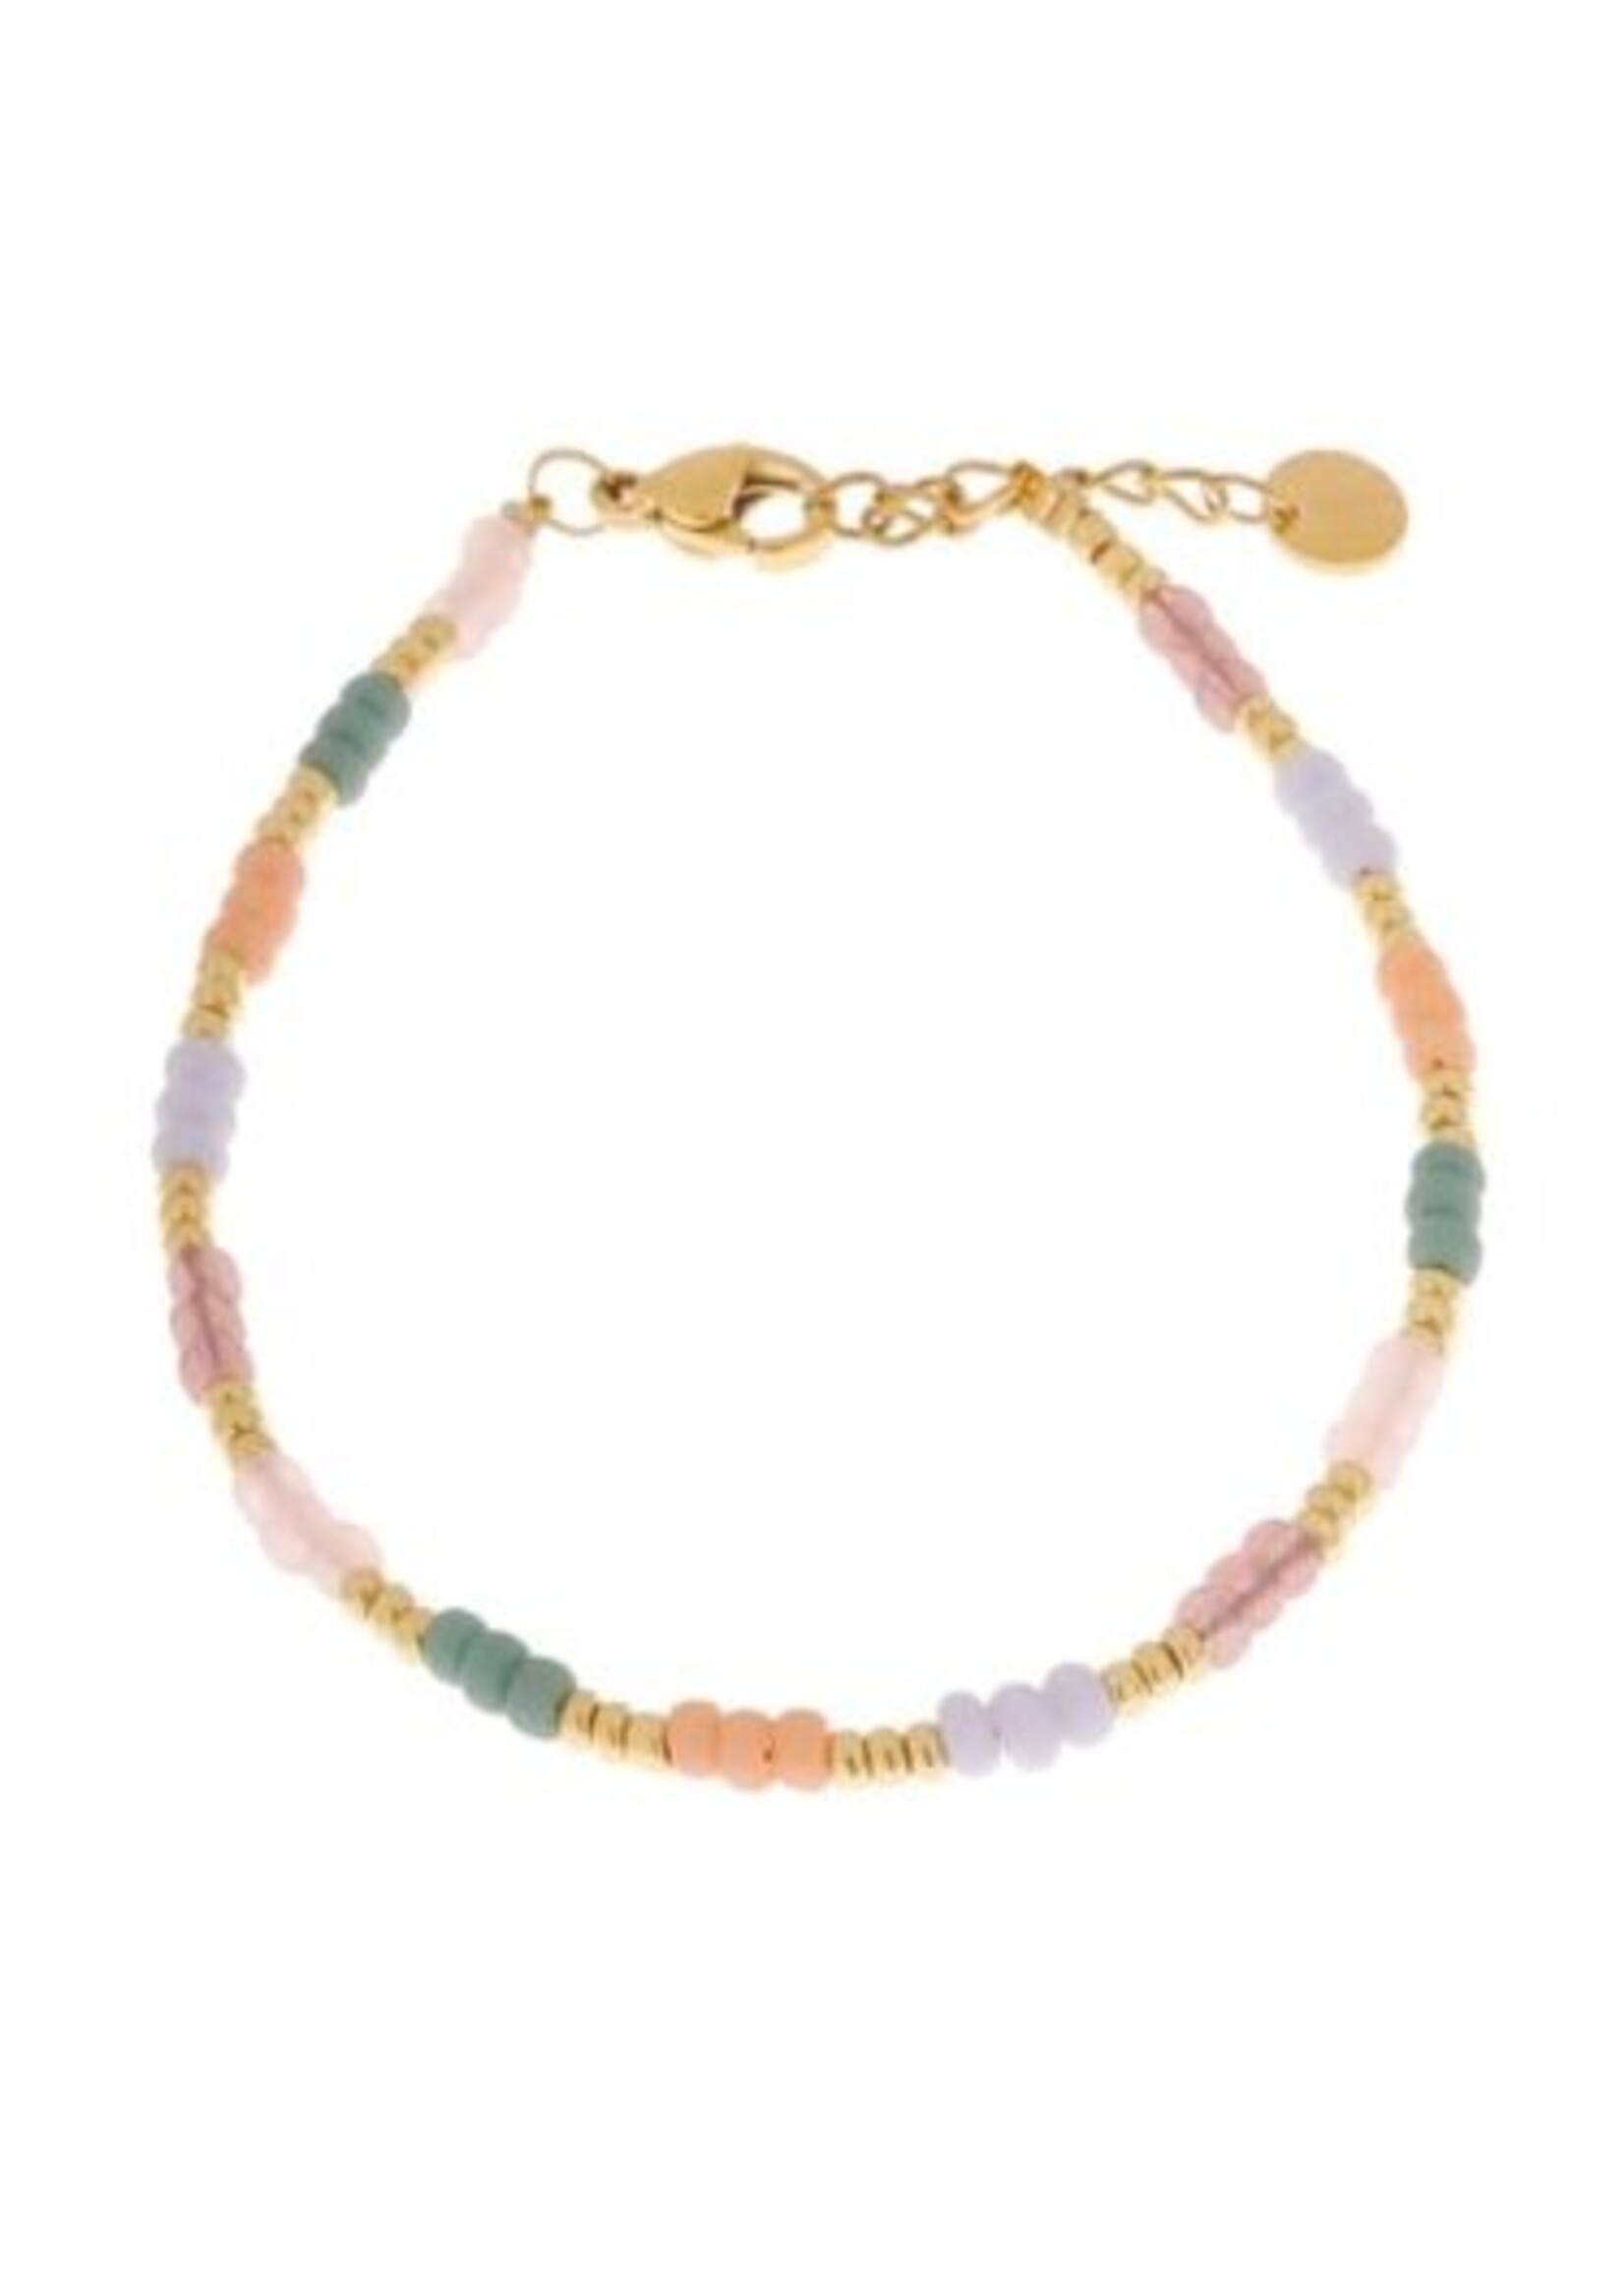 Label kiki ocean rainbow bracelet gold